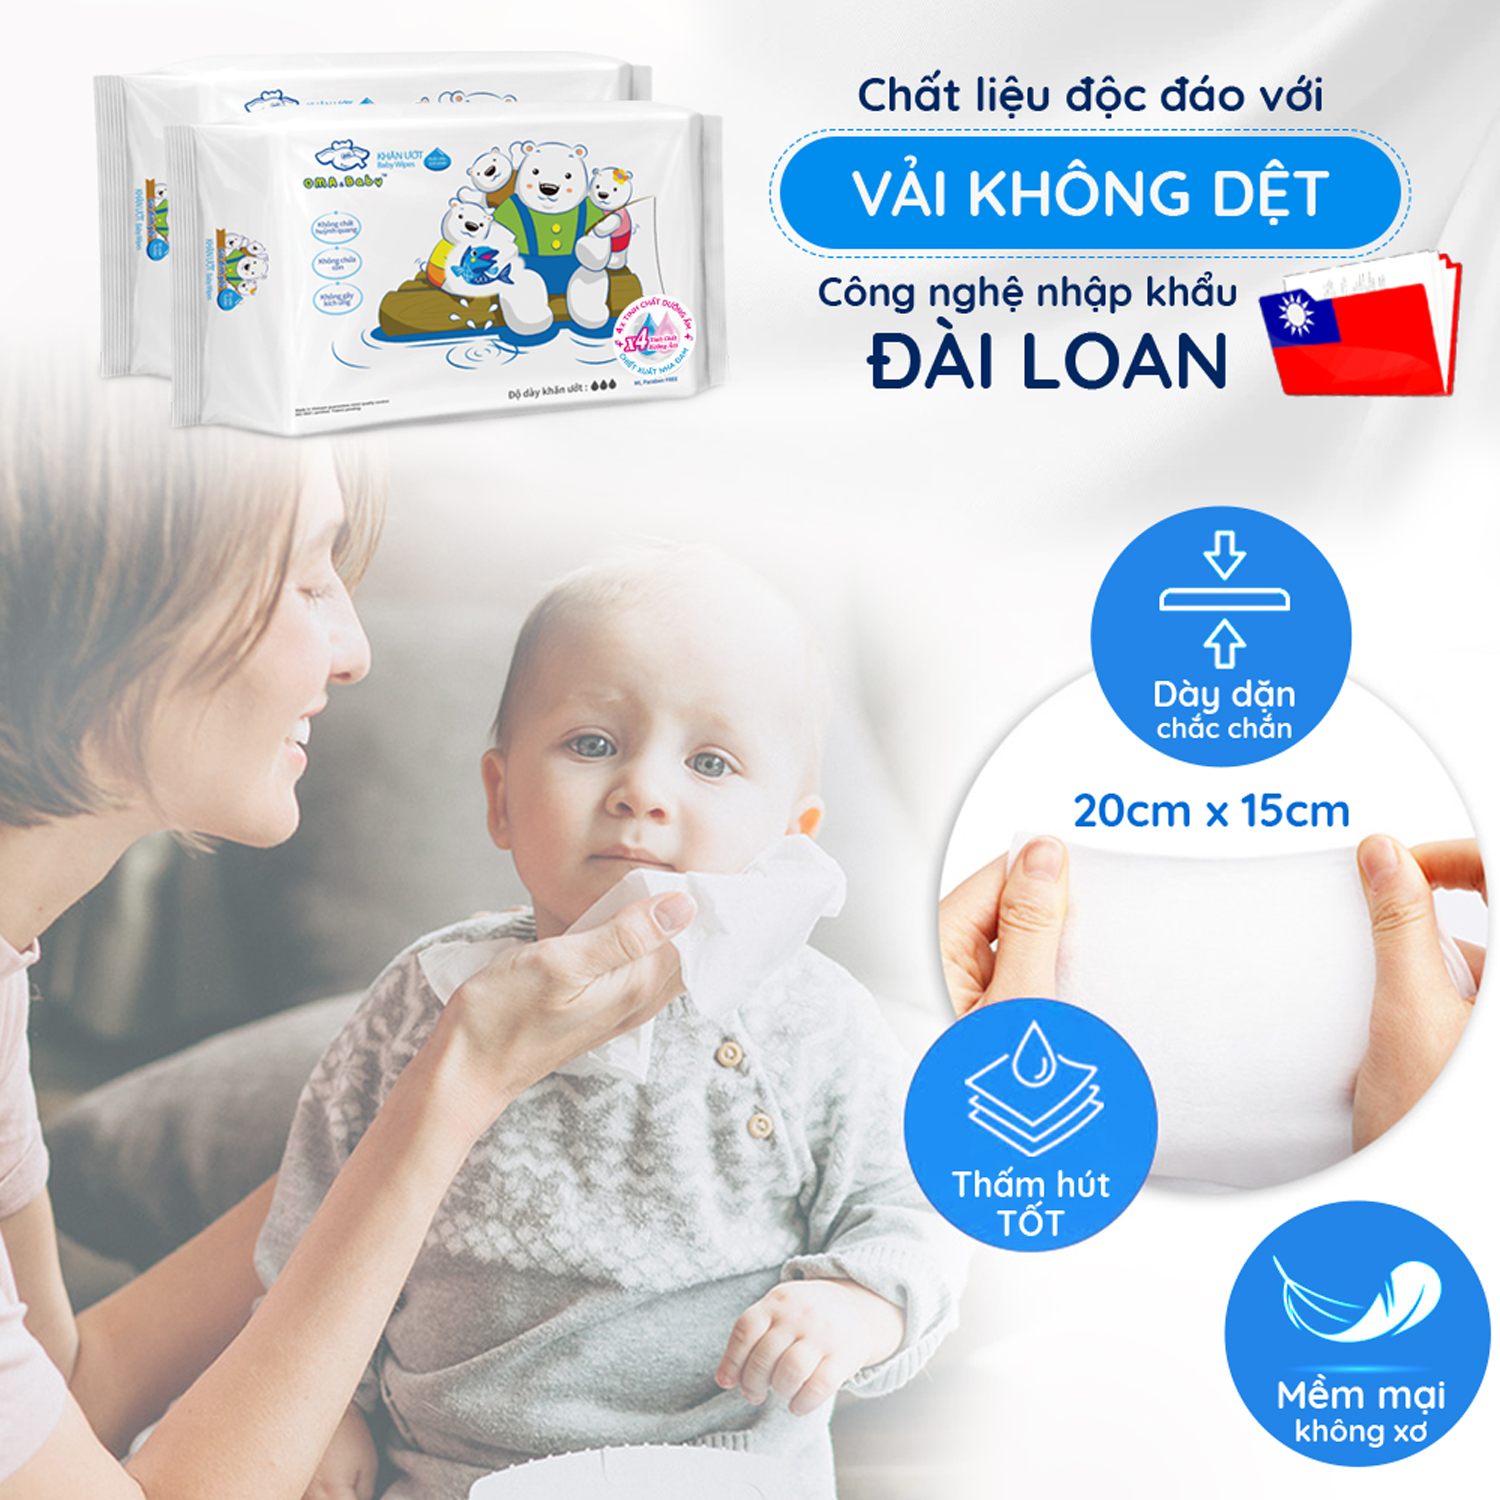 Khăn ướt làm sạch tinh khiết dành cho bé Oma&Baby với công thức Chlorhexidine Digluconate kháng khuẩn an toàn, dịu nhẹ trong khăn ( 25 tờ ) - Oma&Baby premium baby wet wipes ( 25 sheets per package)